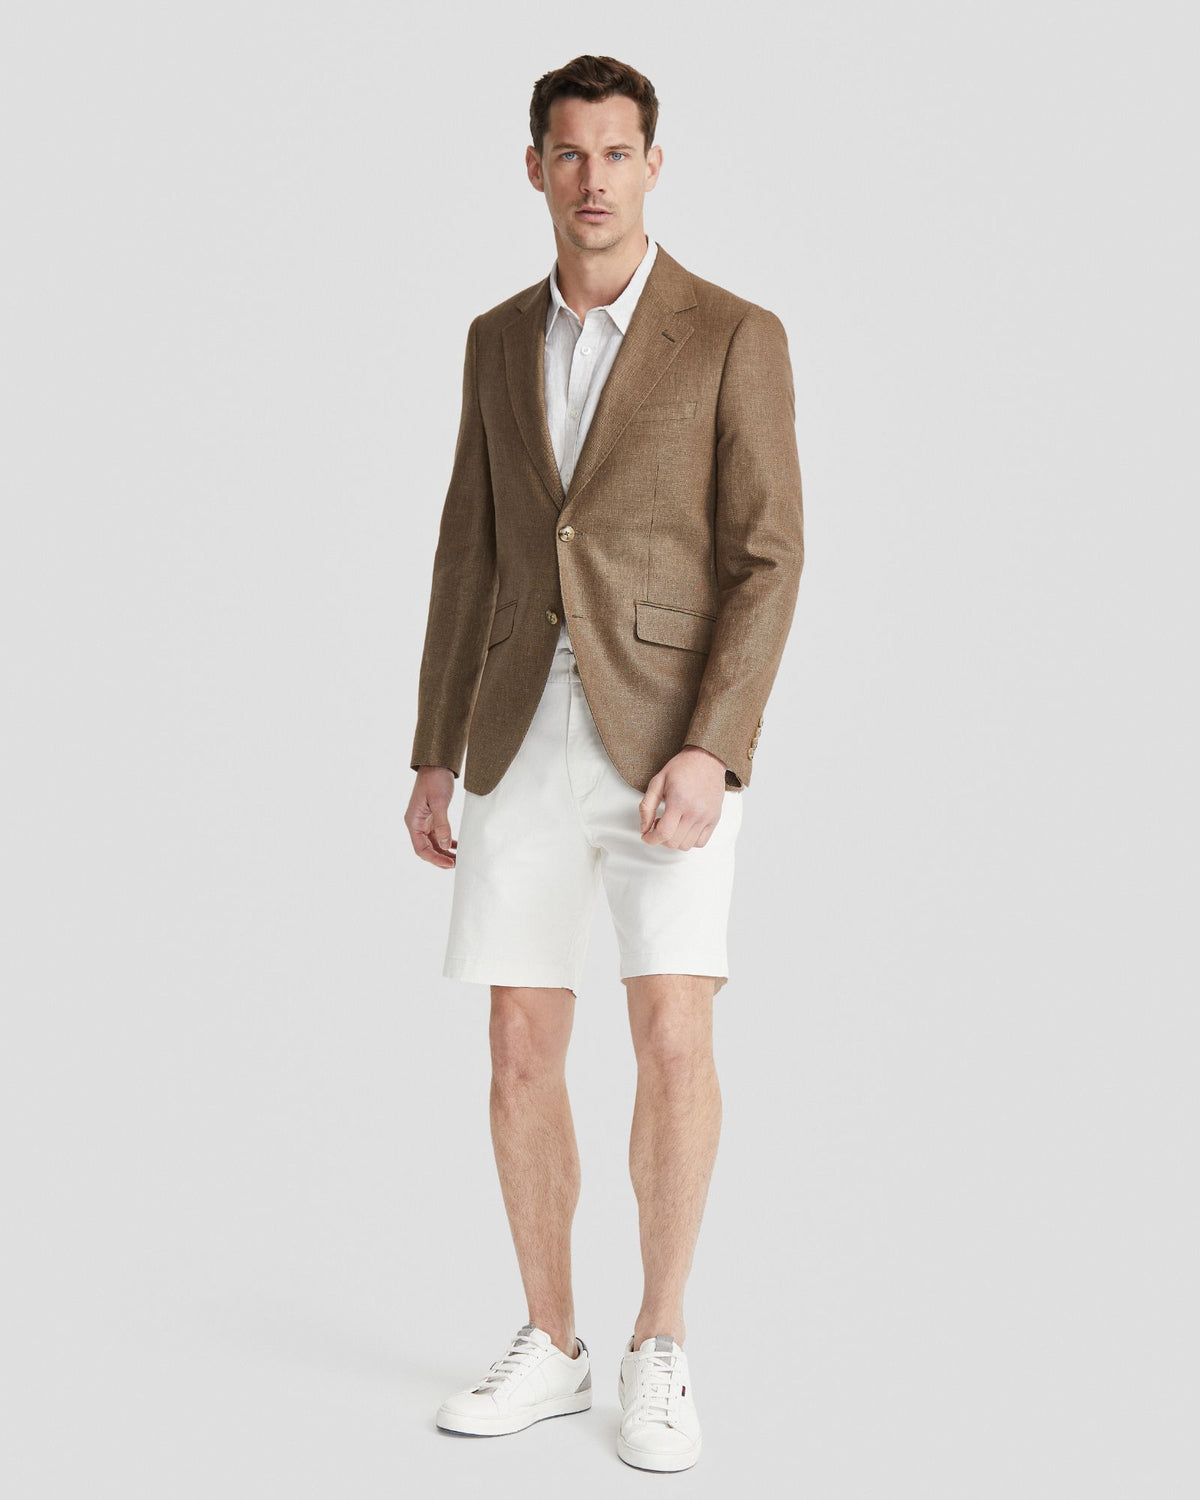 Linen Suits for Men | Hallenstein Brothers